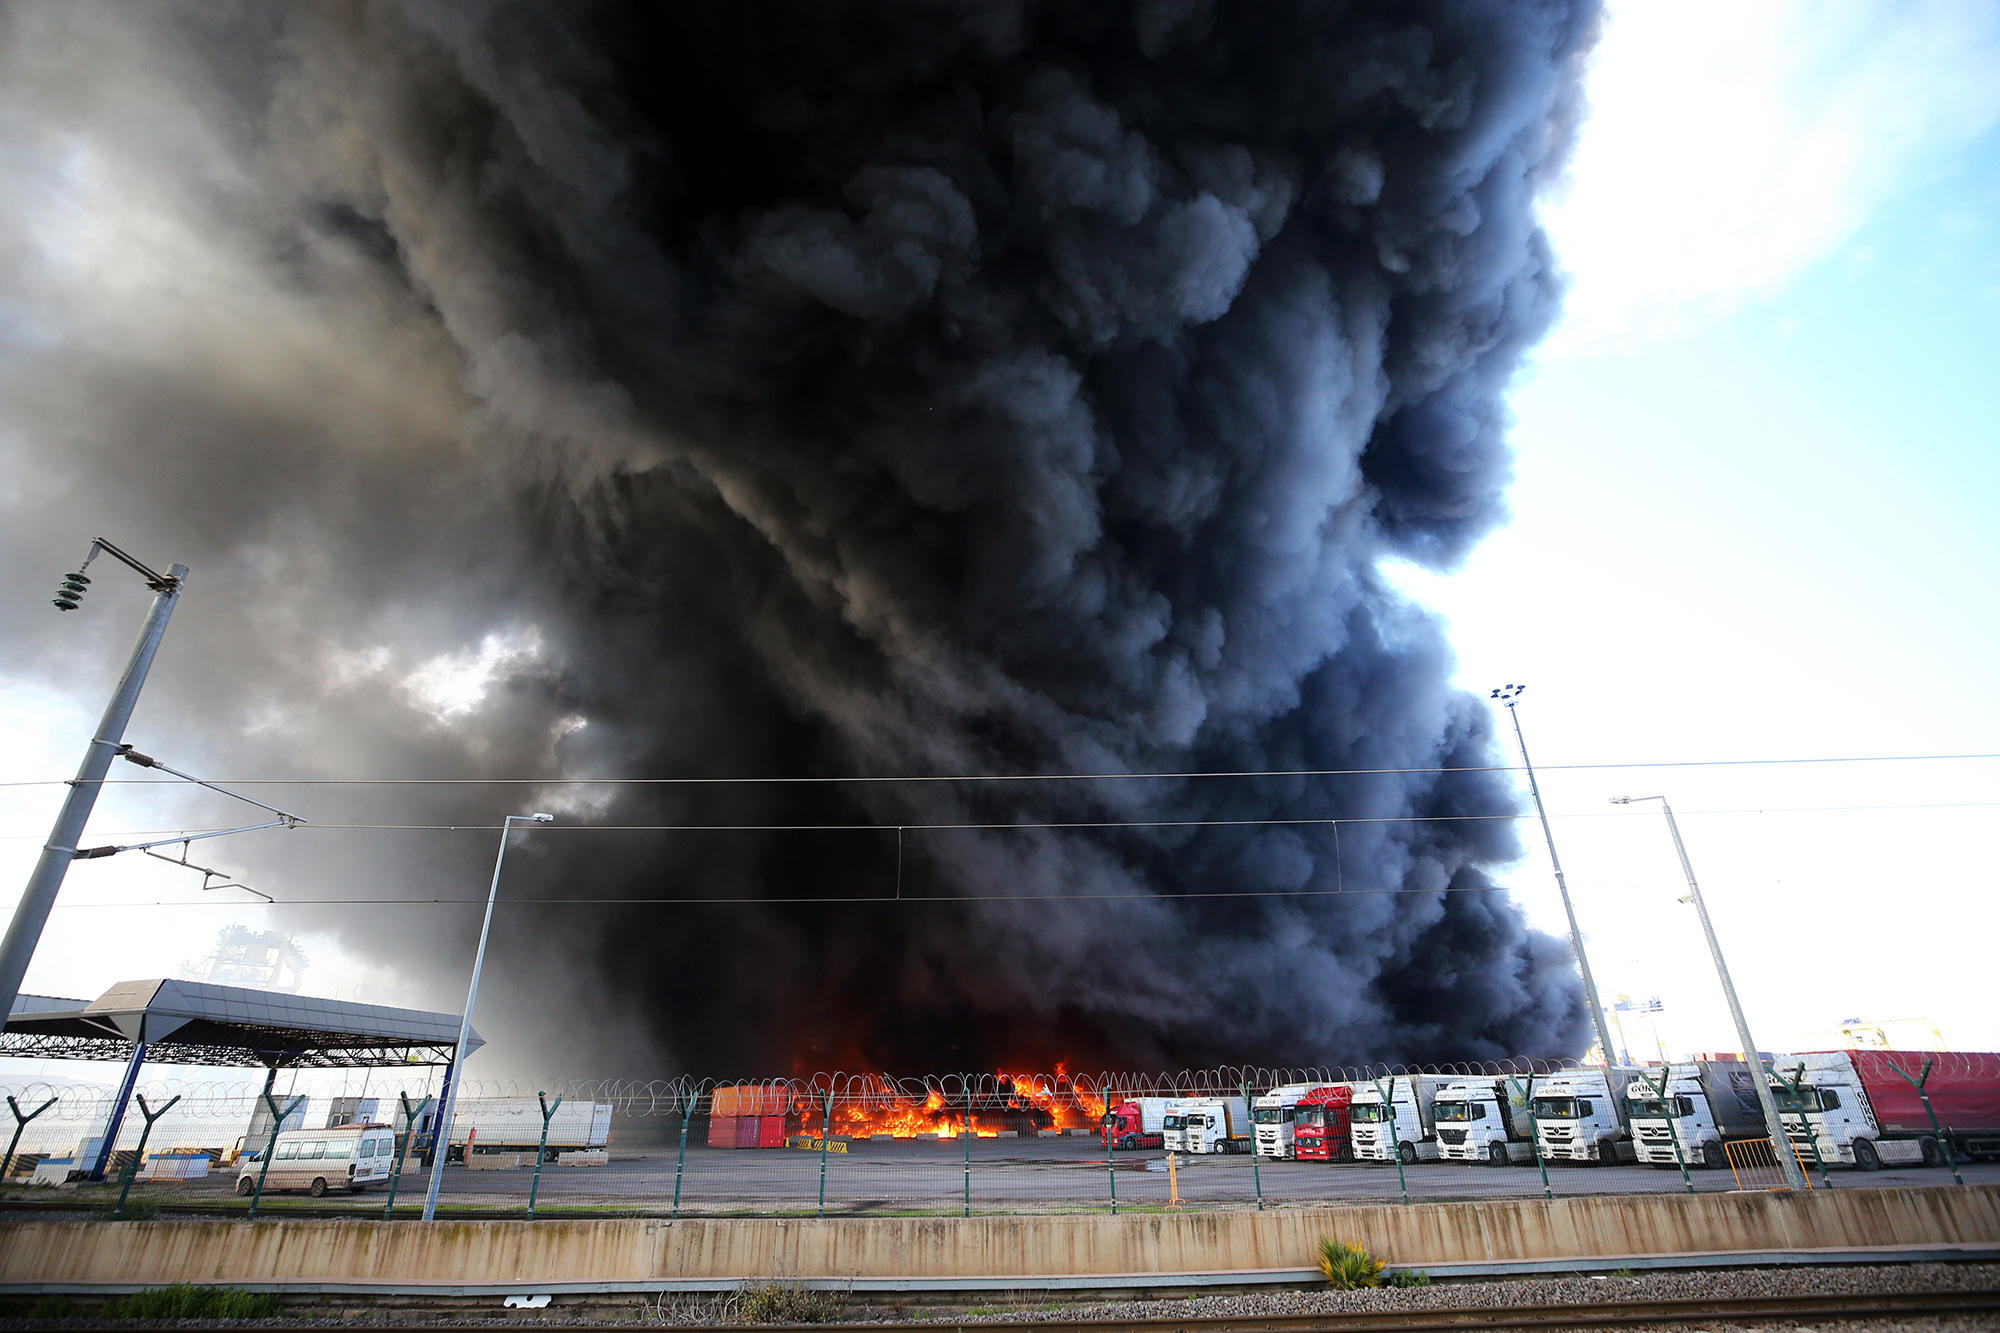 Incendio en los contenedores del puerto Iskenderun, en Turquía (Crédito: Sezgin Pancar/Anadolu Agency via Getty Images)